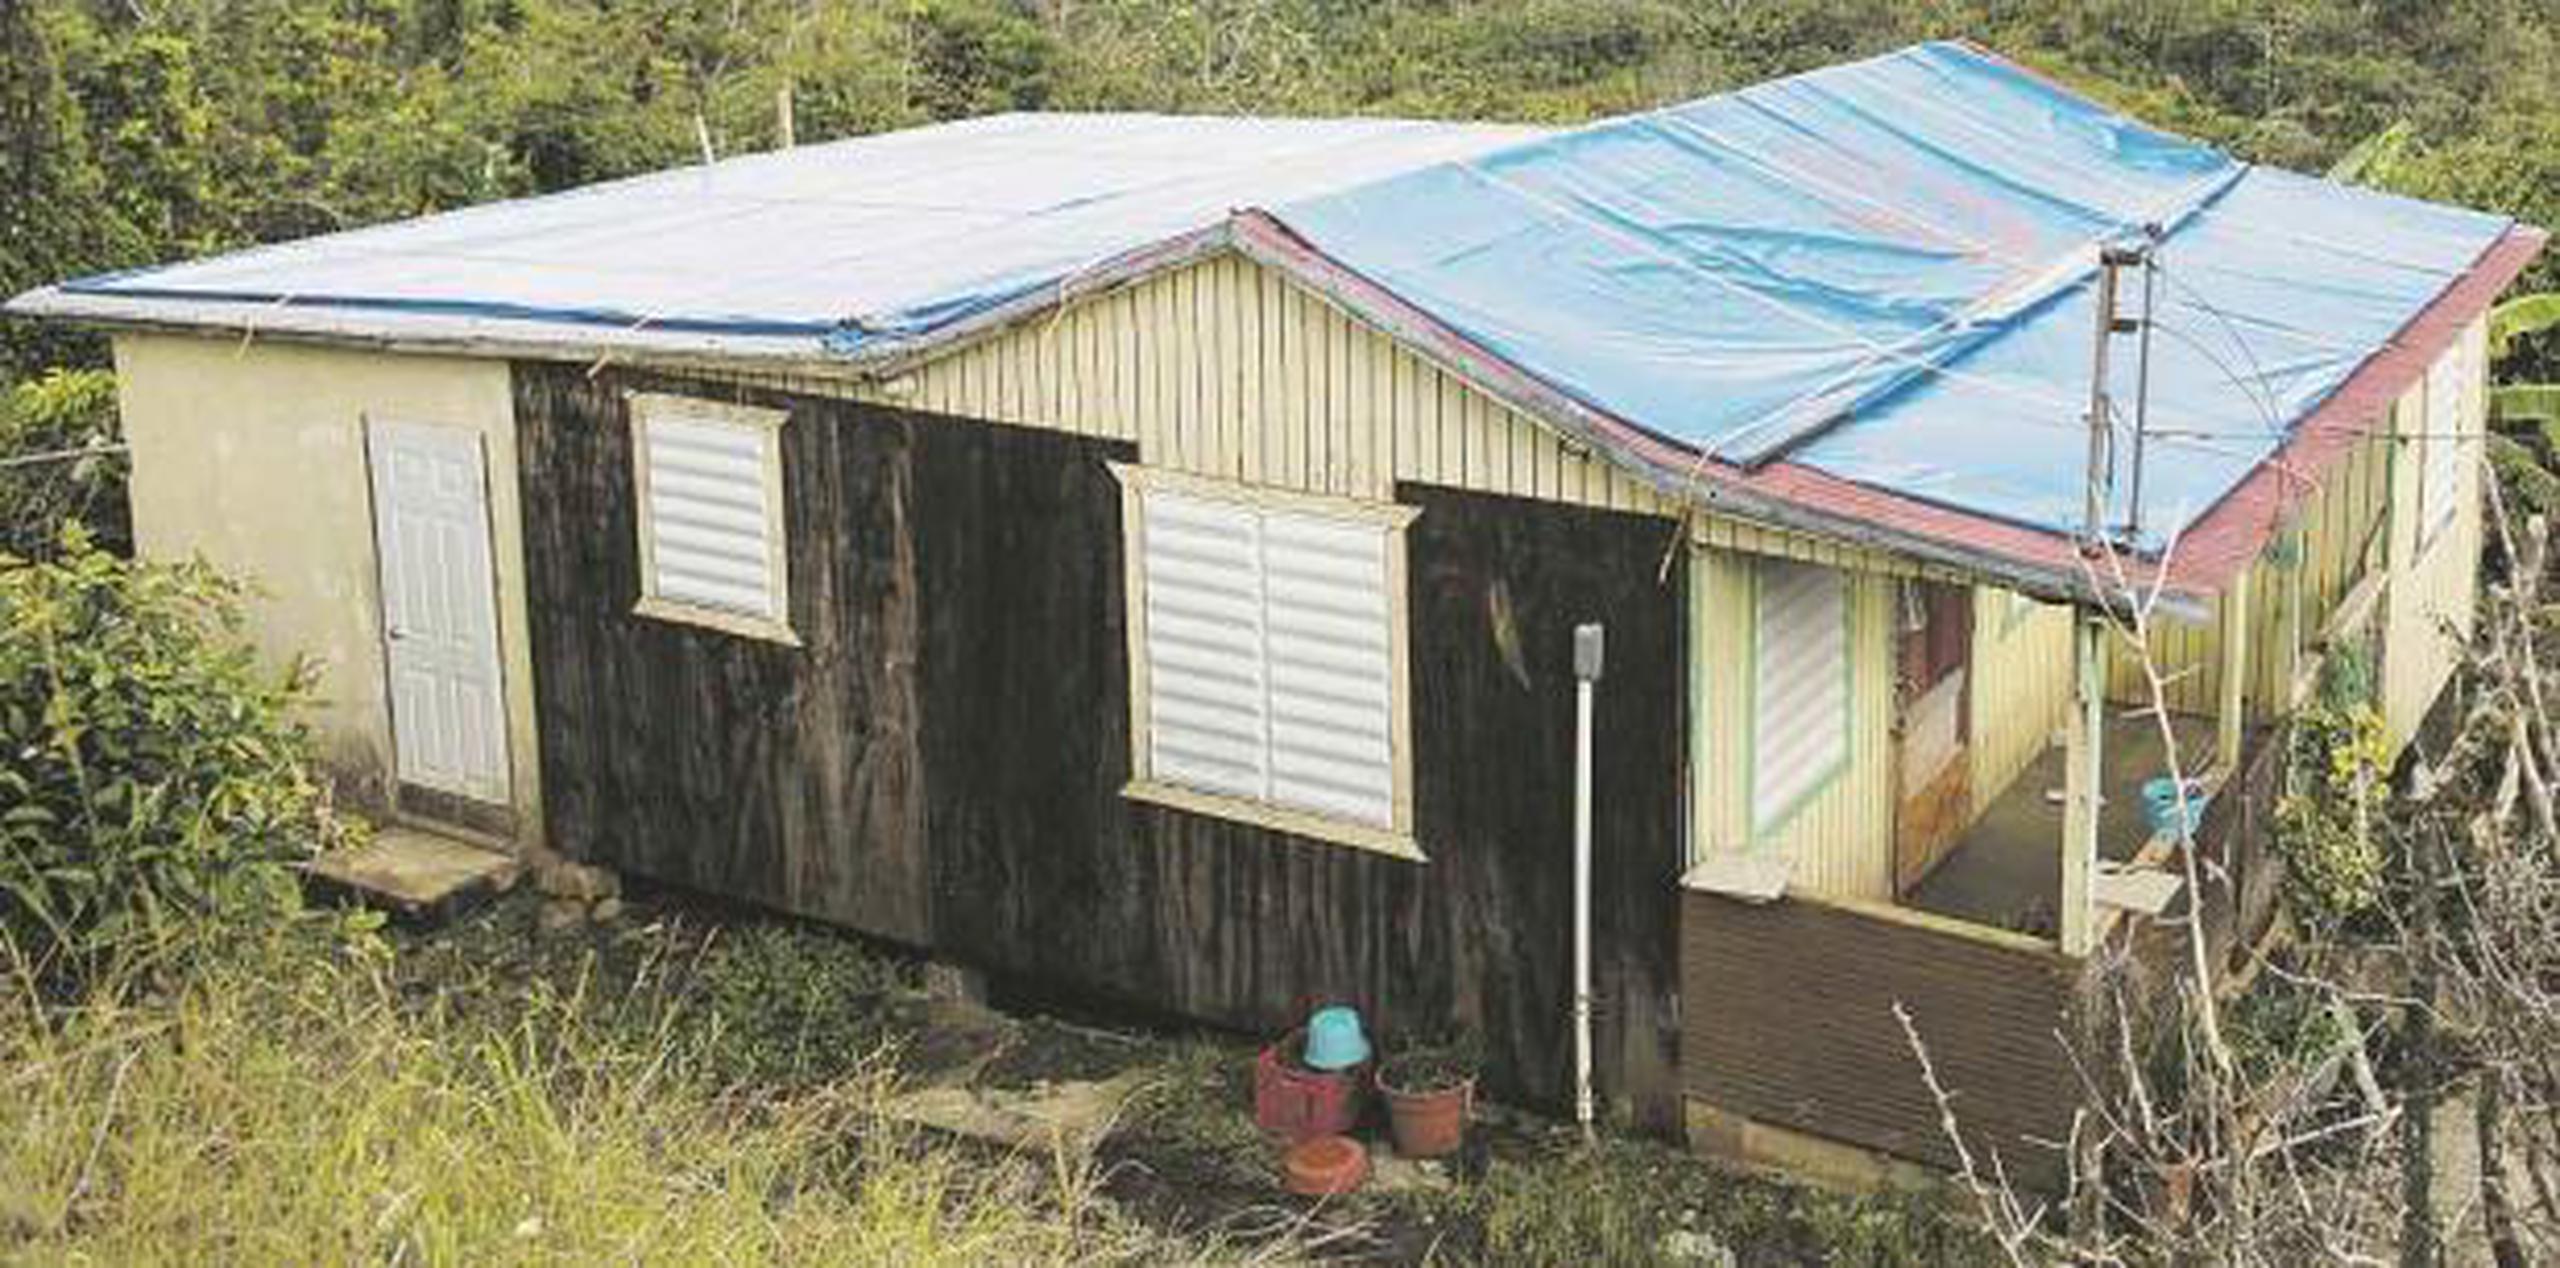 De acuerdo a Hernández Torres, el huracán afectó 2,300 viviendas, de las cuales quedan cerca de 1,200 por restaurar, especialmente en comunidades como Guayabal, Collores, Cayabo, Singapur, entre otras. (Suministrada)